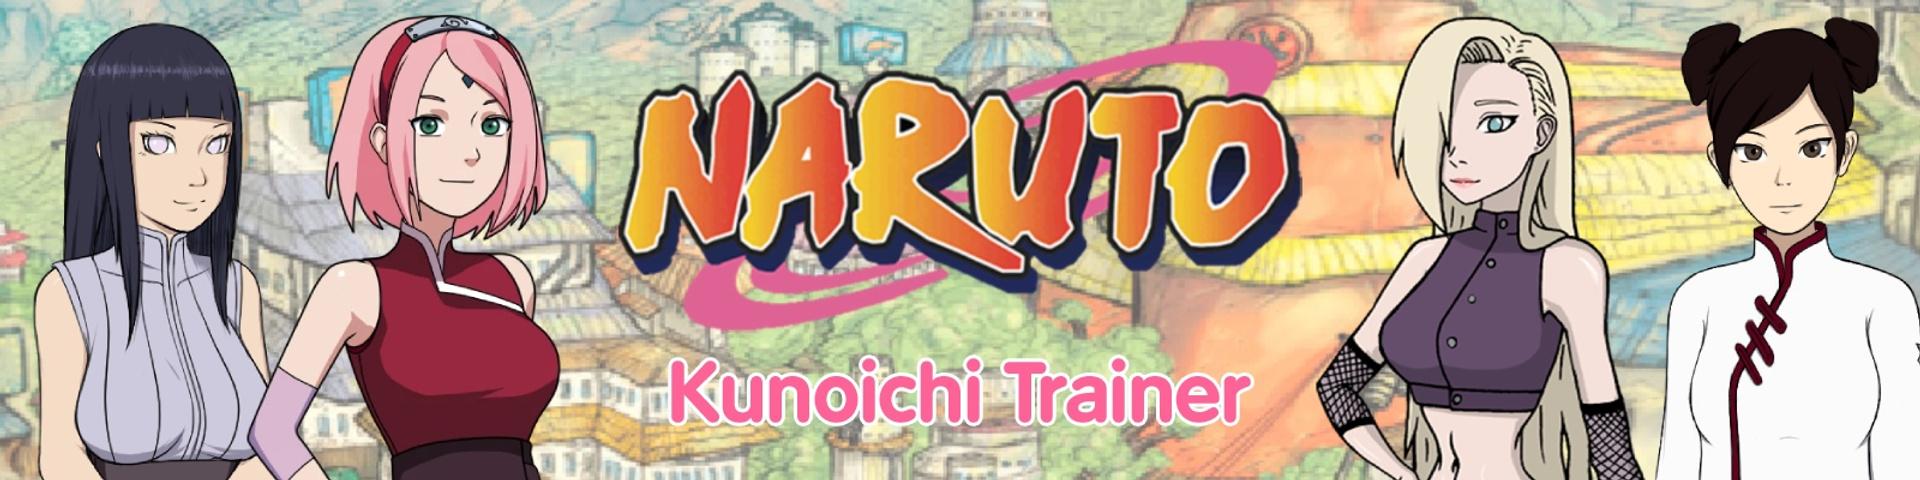 Dinaki - Naruto Kunoichi Trainer Version 0.13